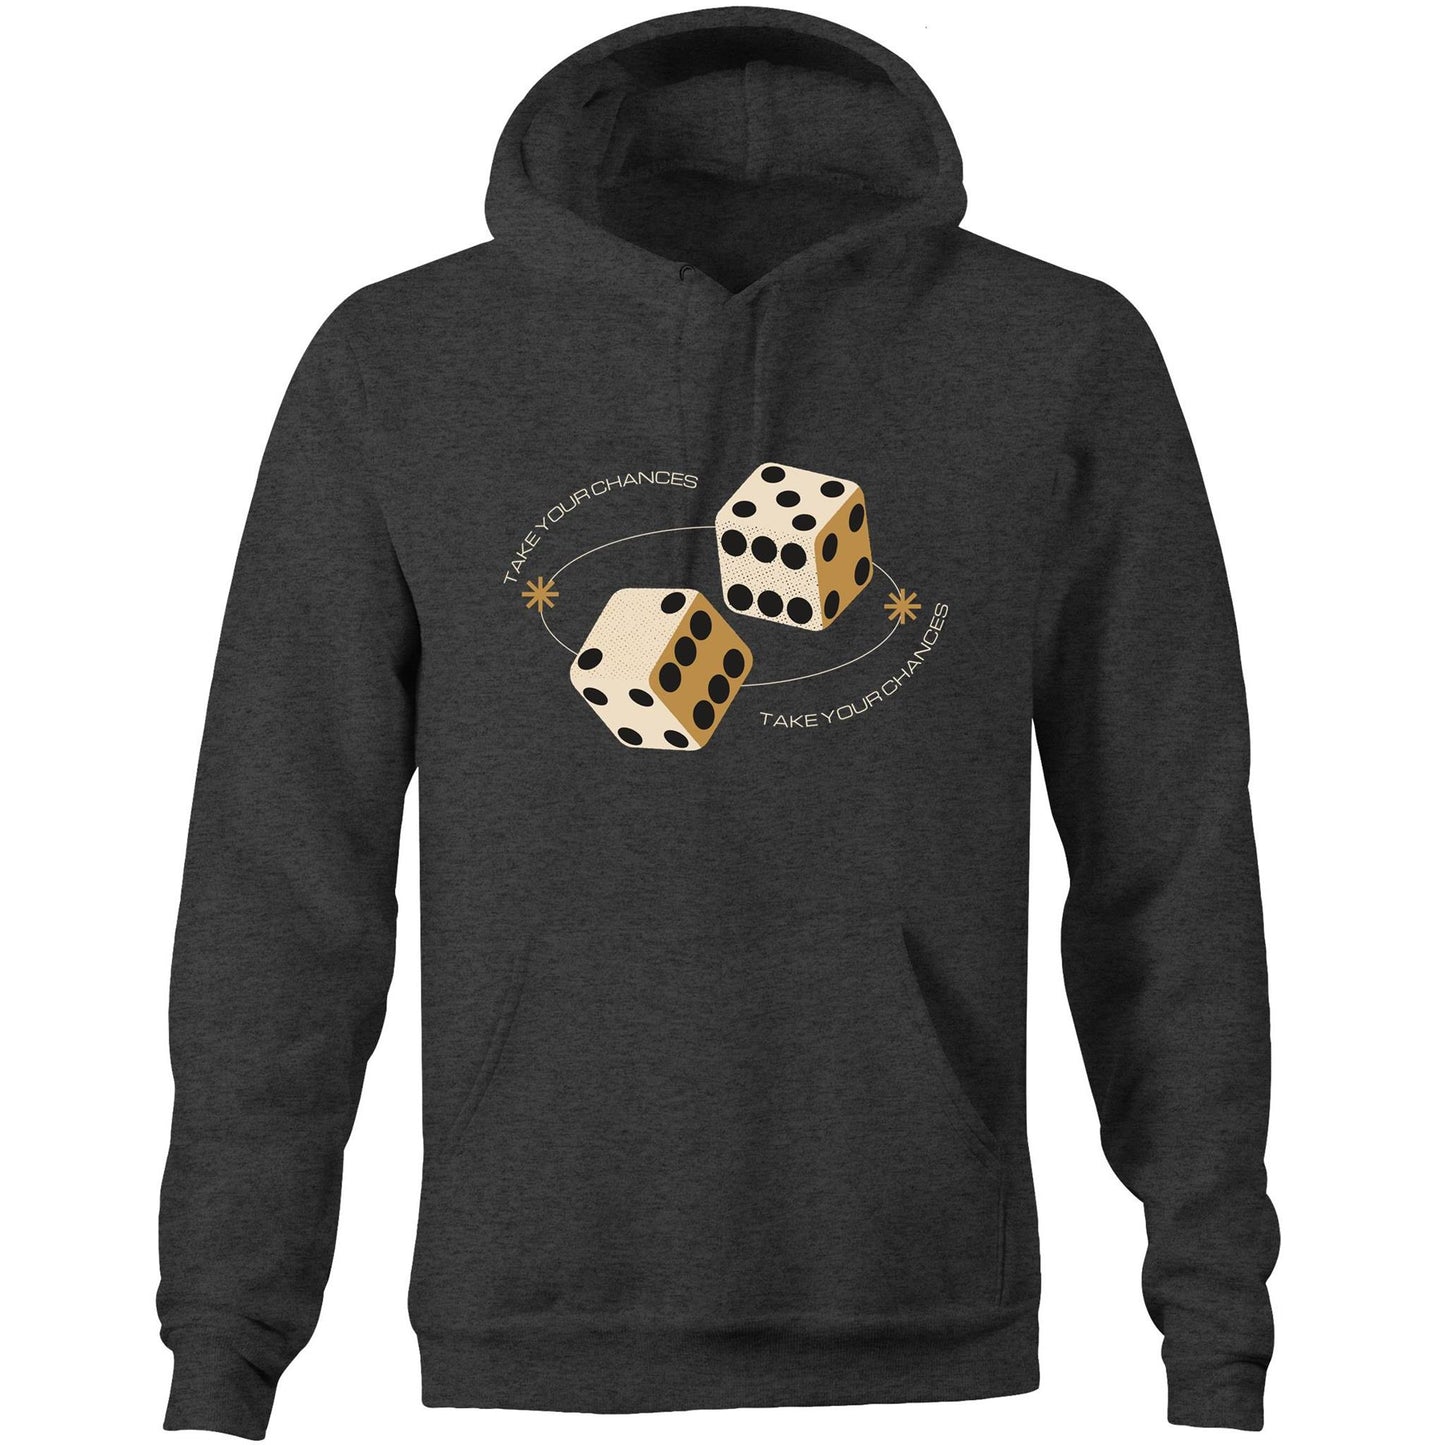 Dice, Take Your Chances - Pocket Hoodie Sweatshirt Asphalt Marle Hoodie Games